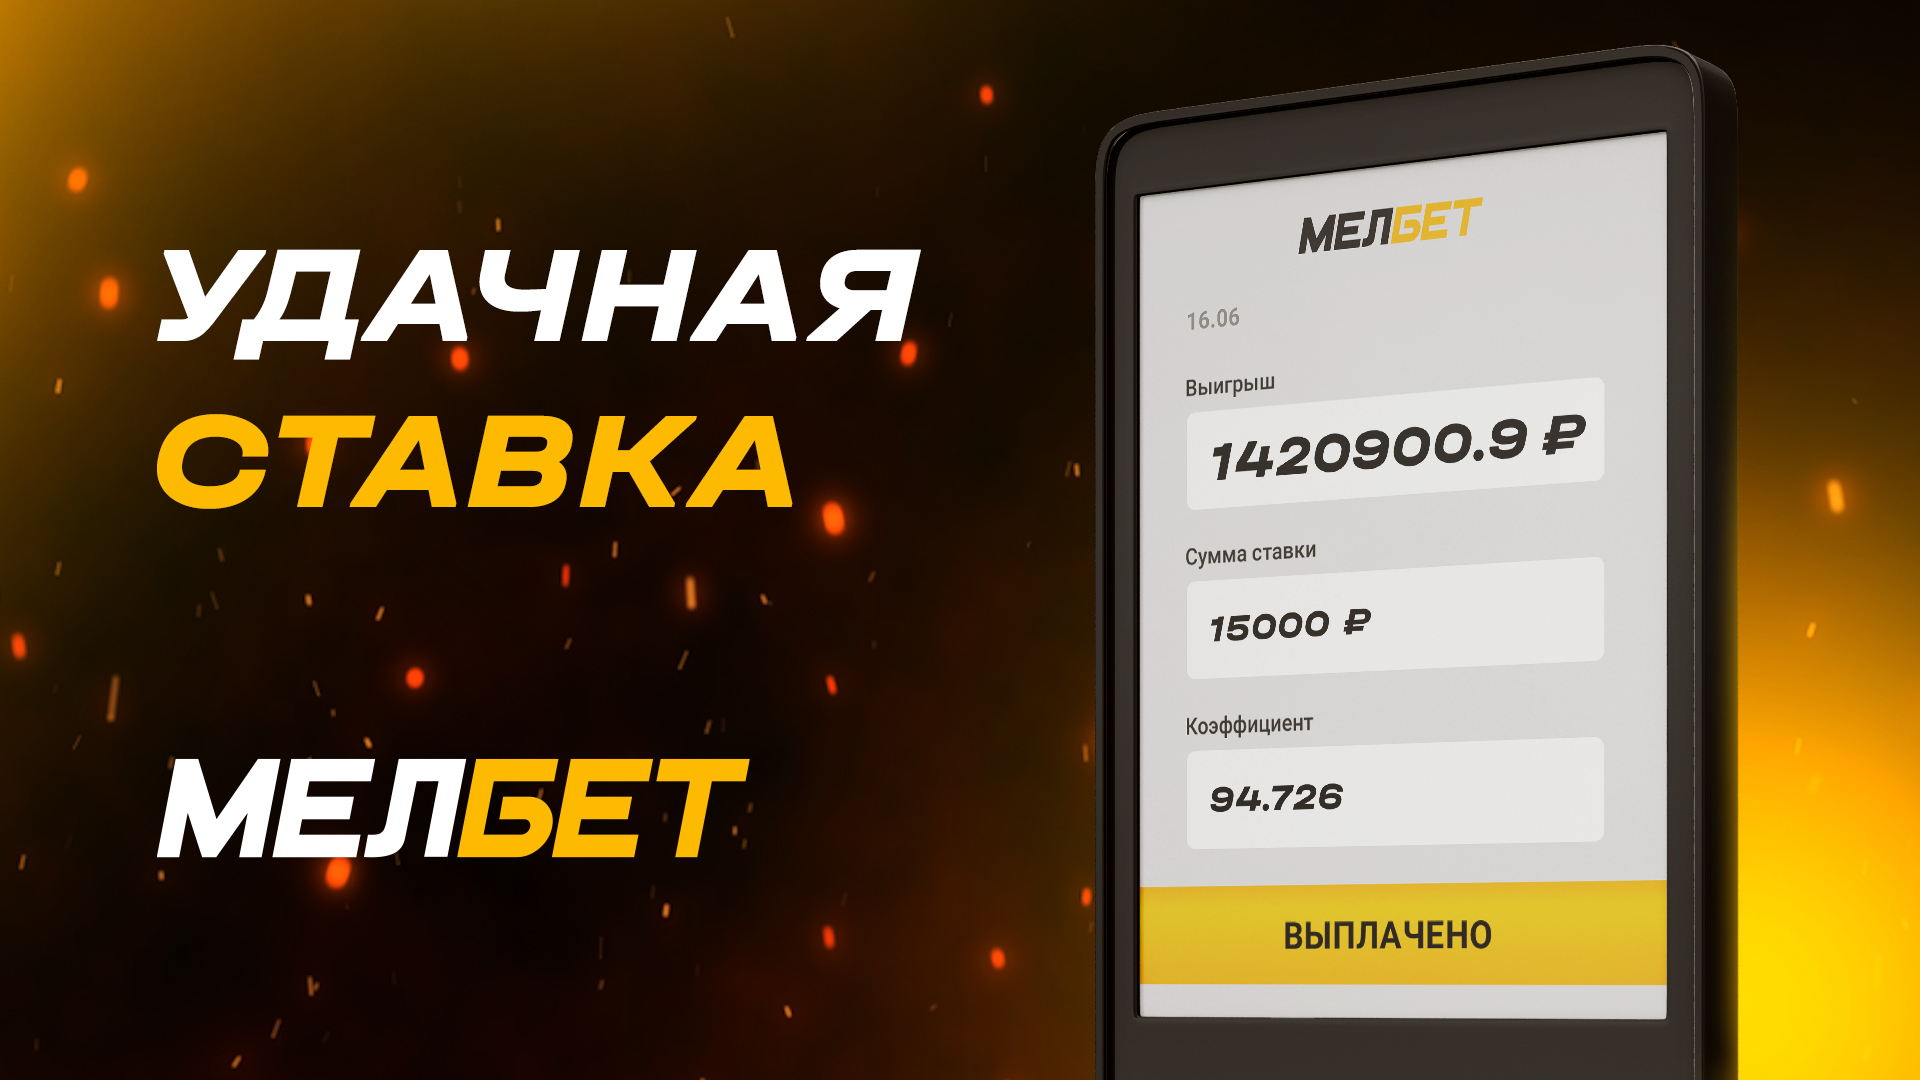 Удачная ставка в БК «Мелбет» принесла игроку выигрыш 1 420 900 рублей!